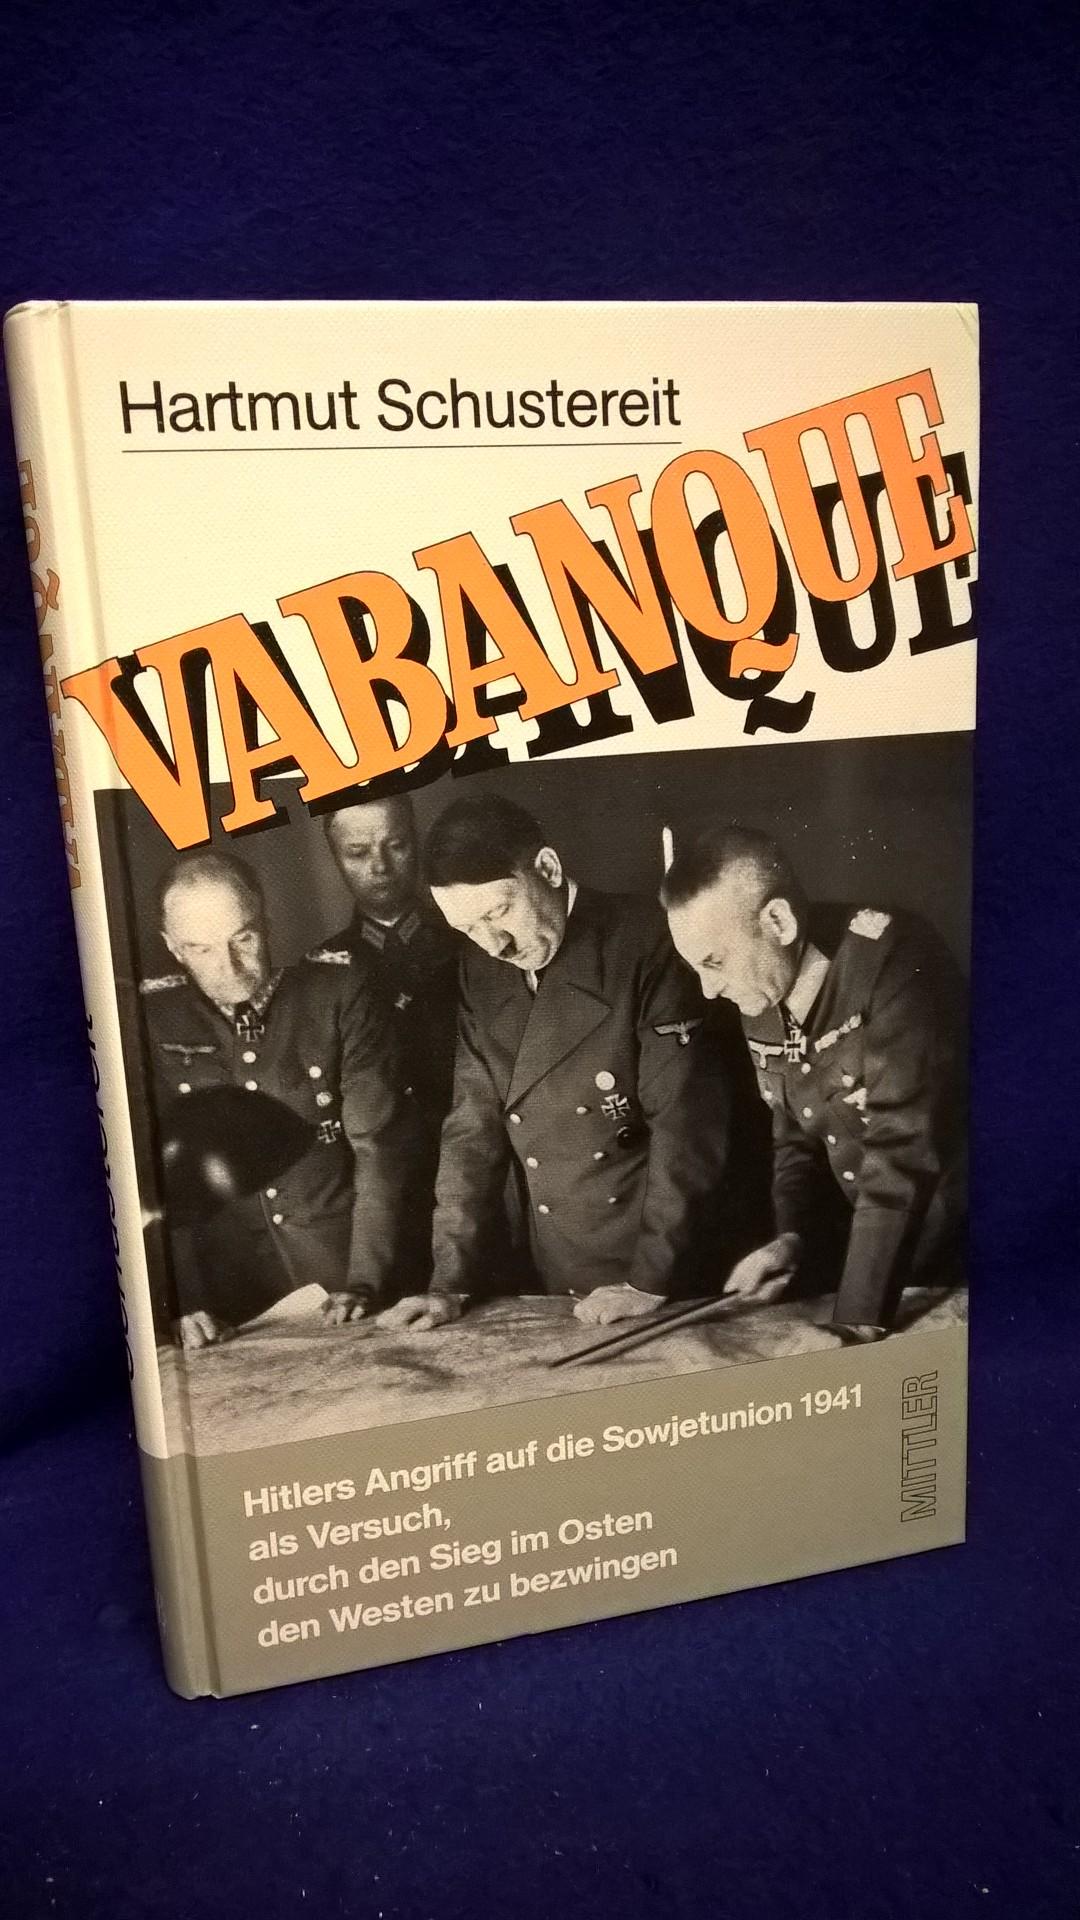 Vabanque. Hitlers Angriff auf die Sowjetunion 1941 als Versuch, durch den Sieg im Osten den Westen zu bezwingen. 